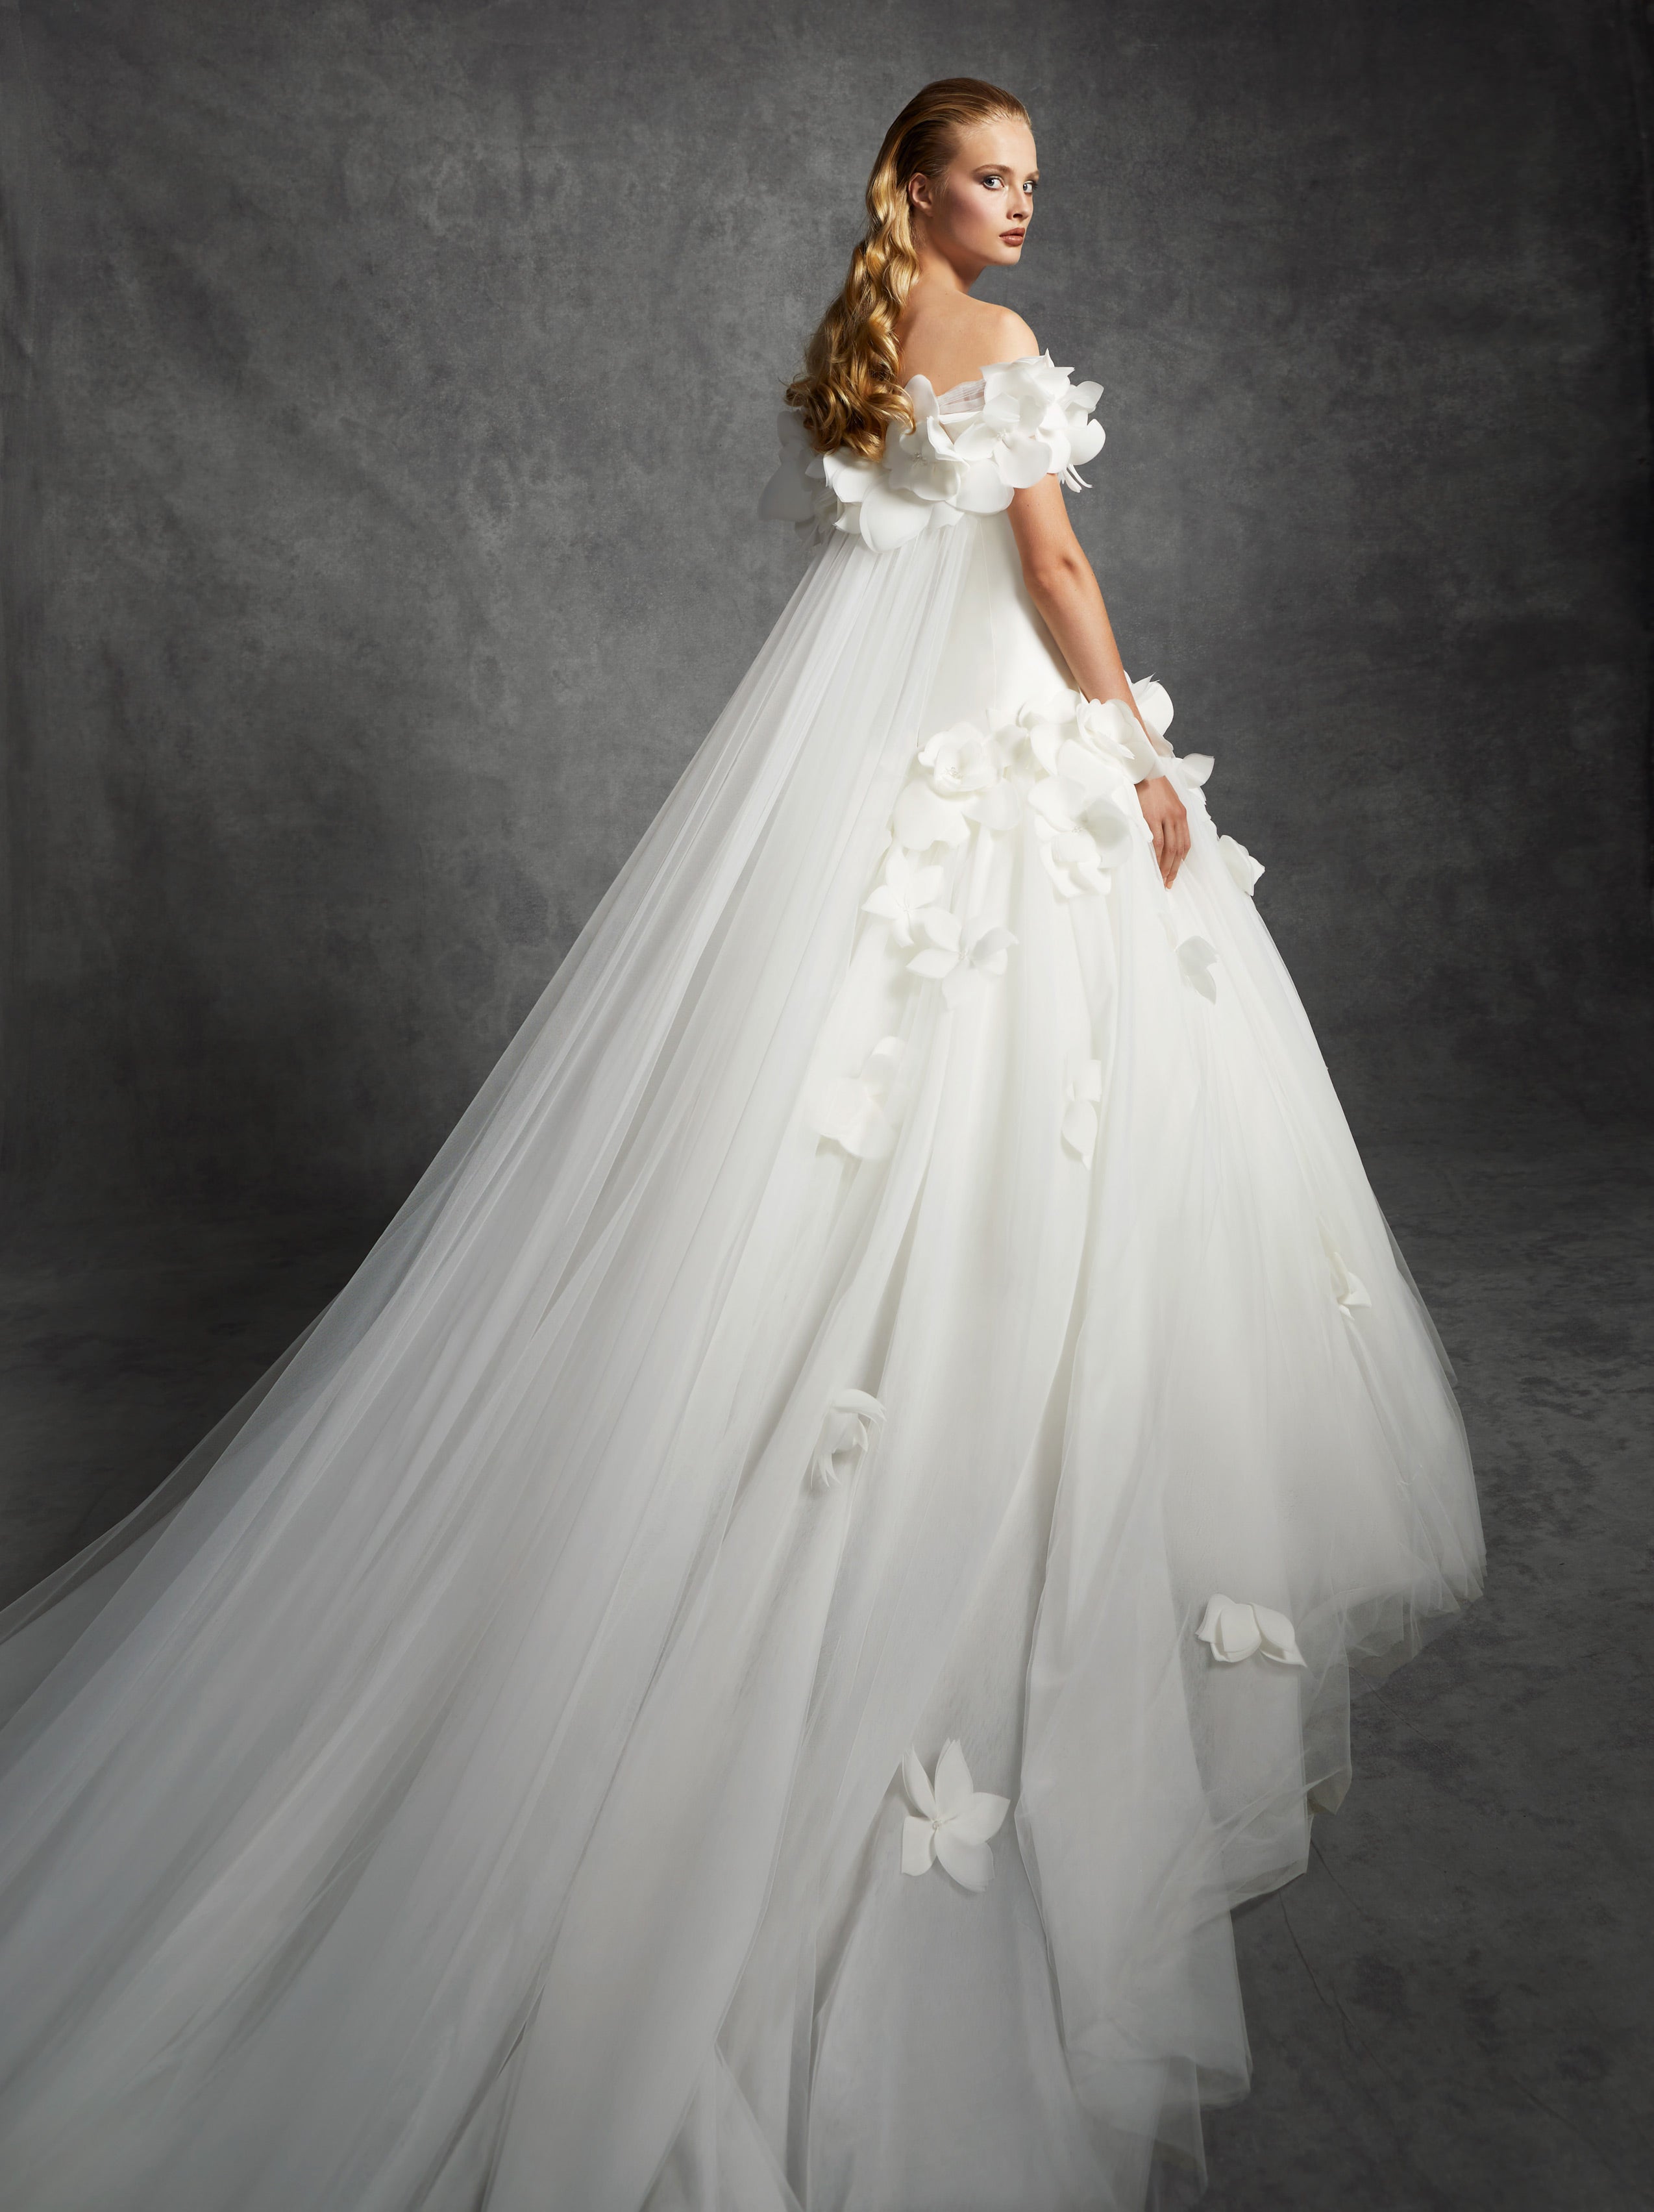 Olivia Wedding Dress Princess Model Intense India | Ubuy